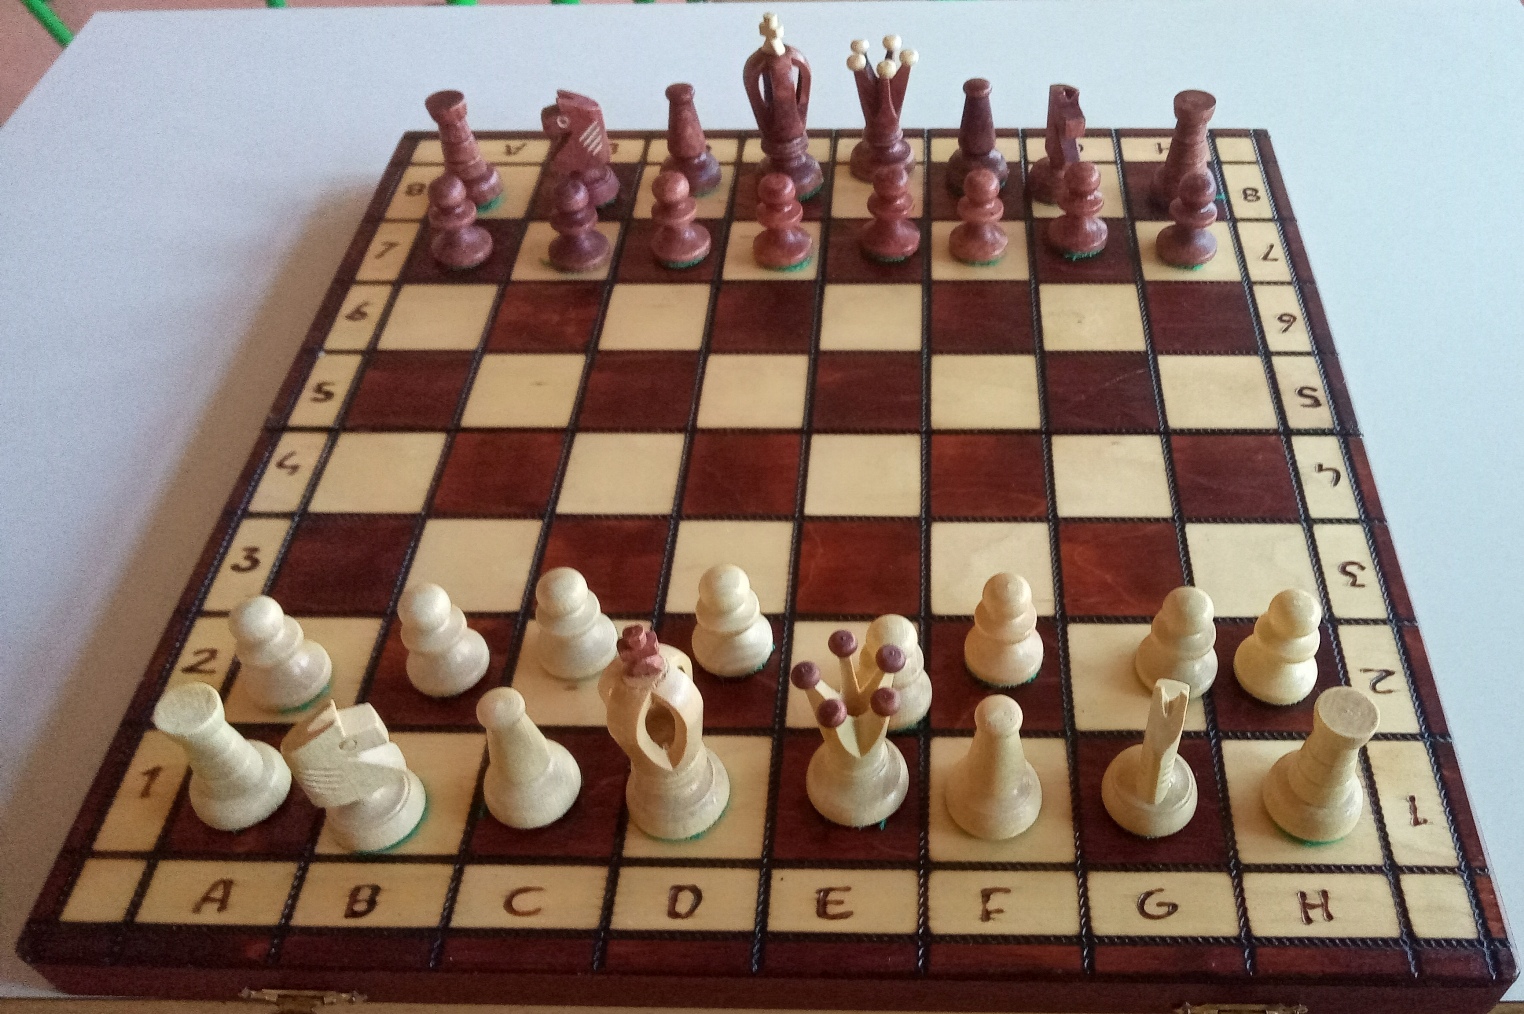 Na zdjęciu jest szachownica z figurami szachowymi.